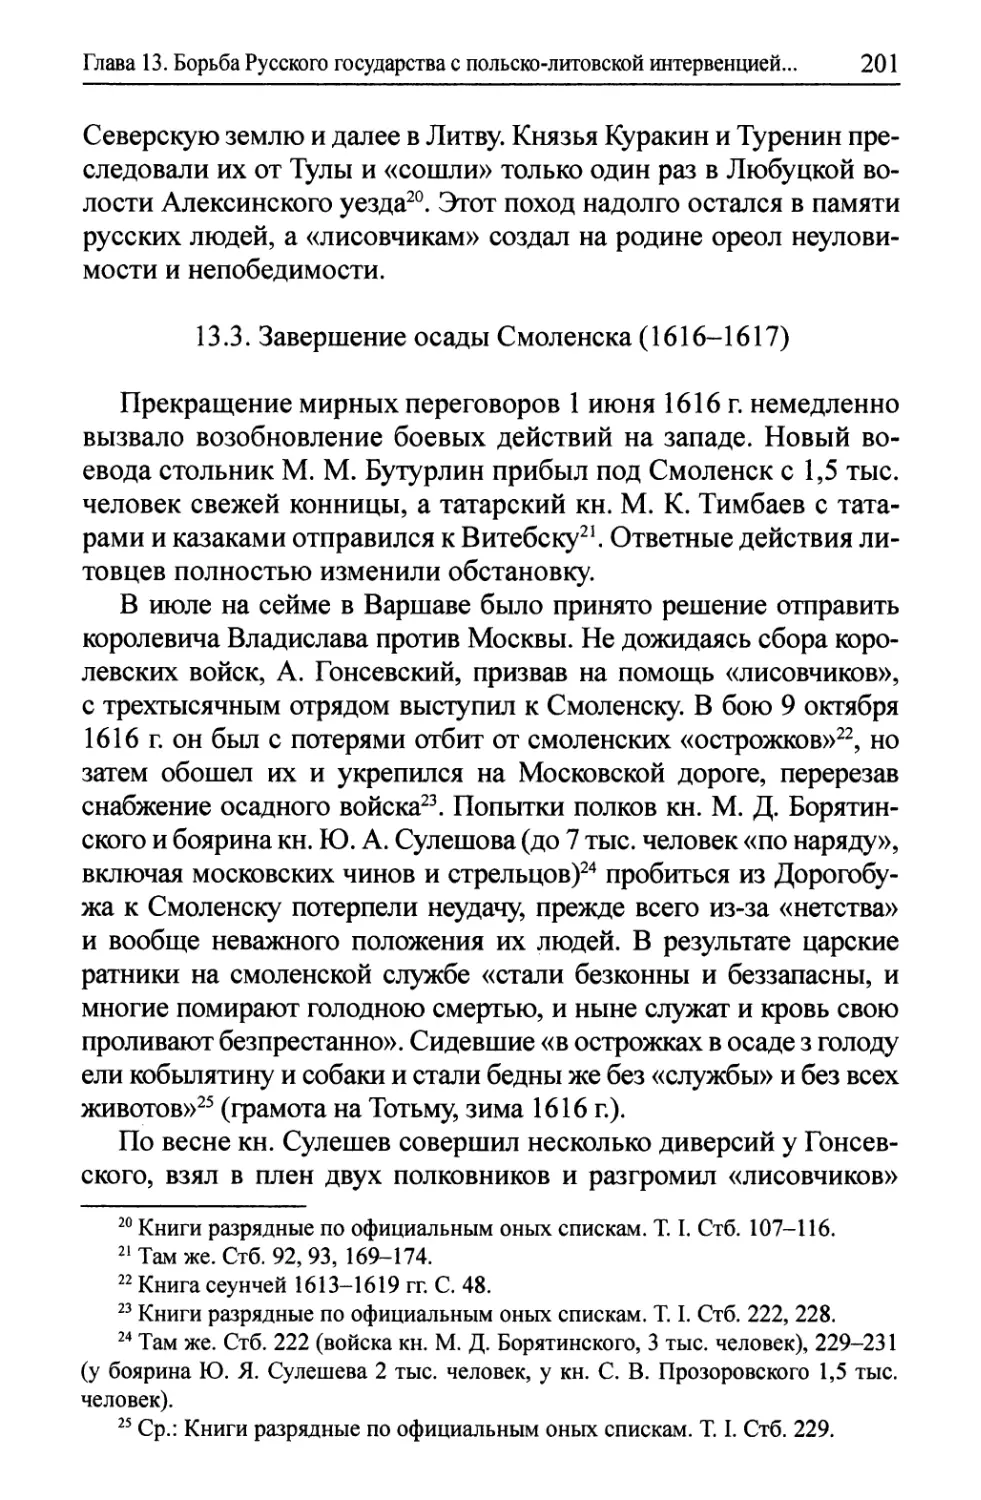 13.3. Завершение осады Смоленска (1616-1617)